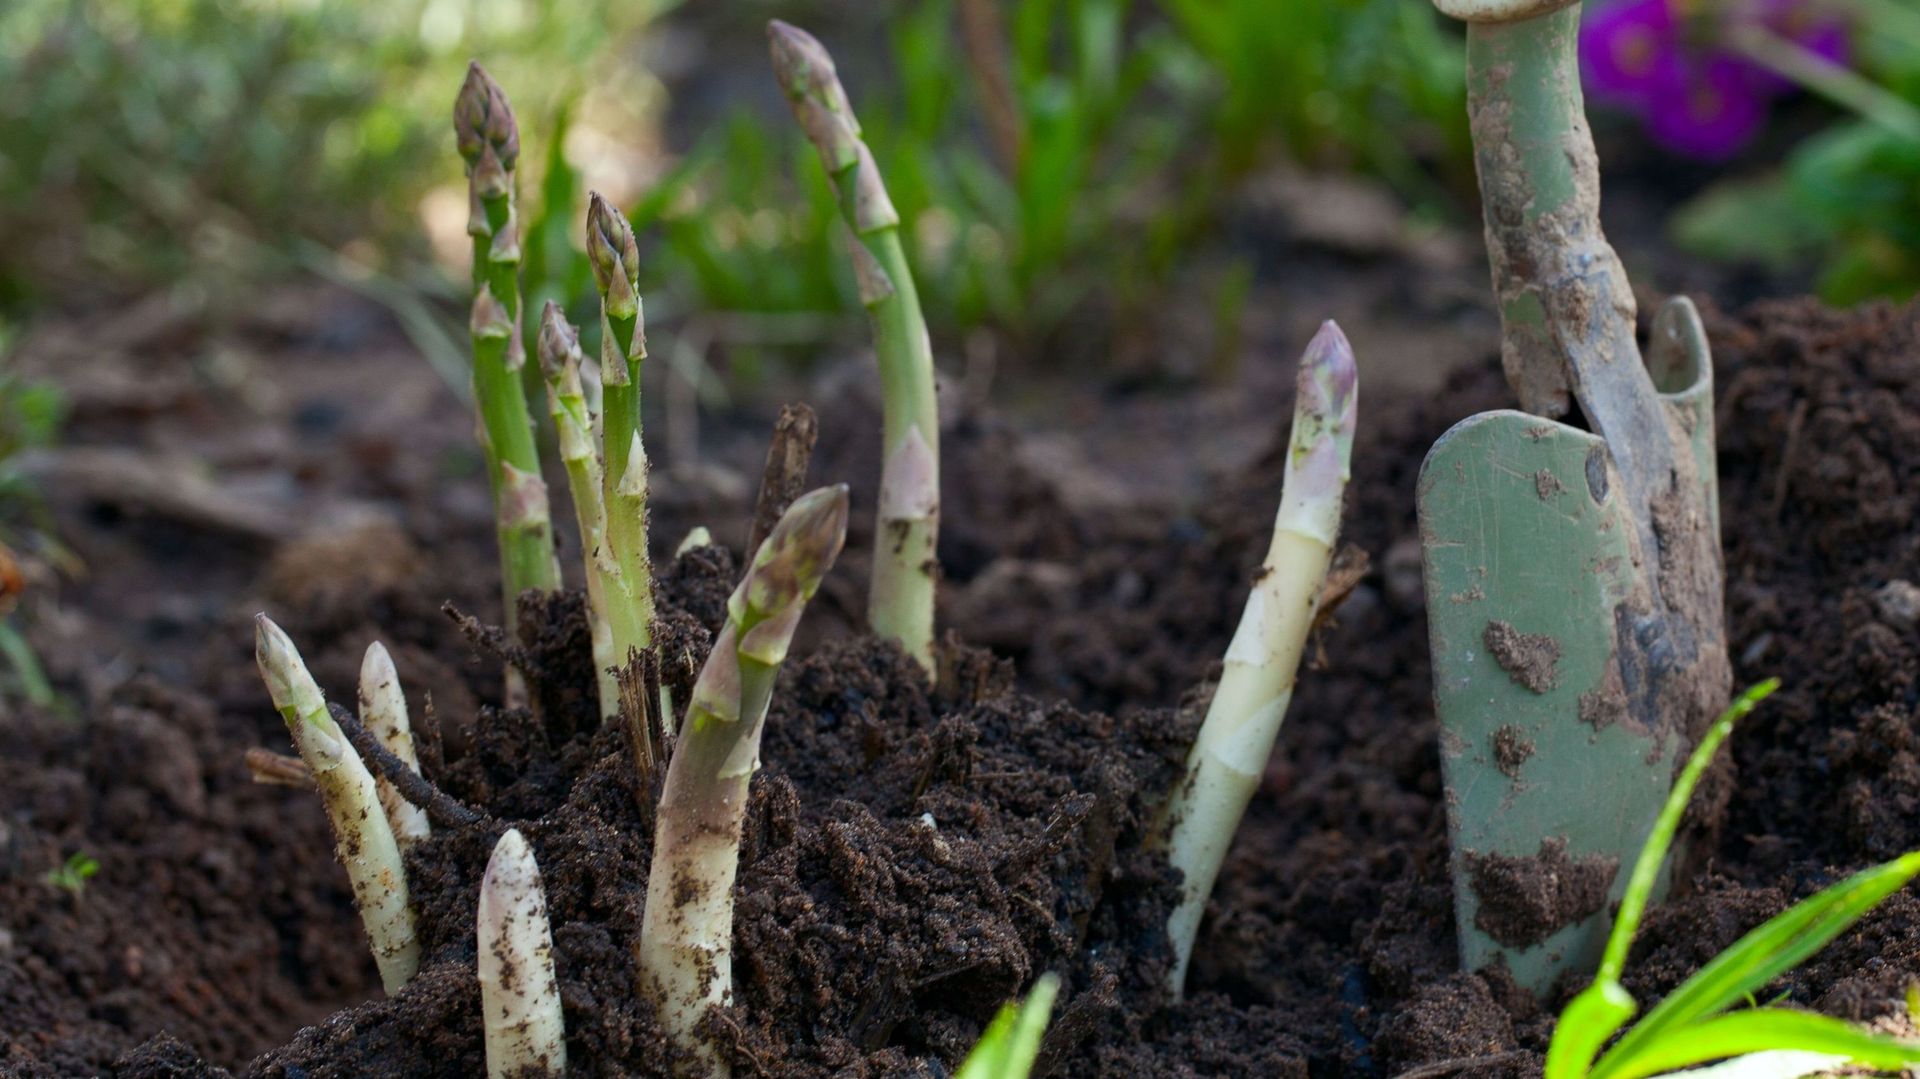 Si les variétés de culture traditionnelle sous butte ne sont pas buttées, les asperges verdissent dès leur sortie de terre et peuvent être consommées ainsi. Mais elles seront plus fibreuses que les fines asperges vertes qui fondent dans la bouche.